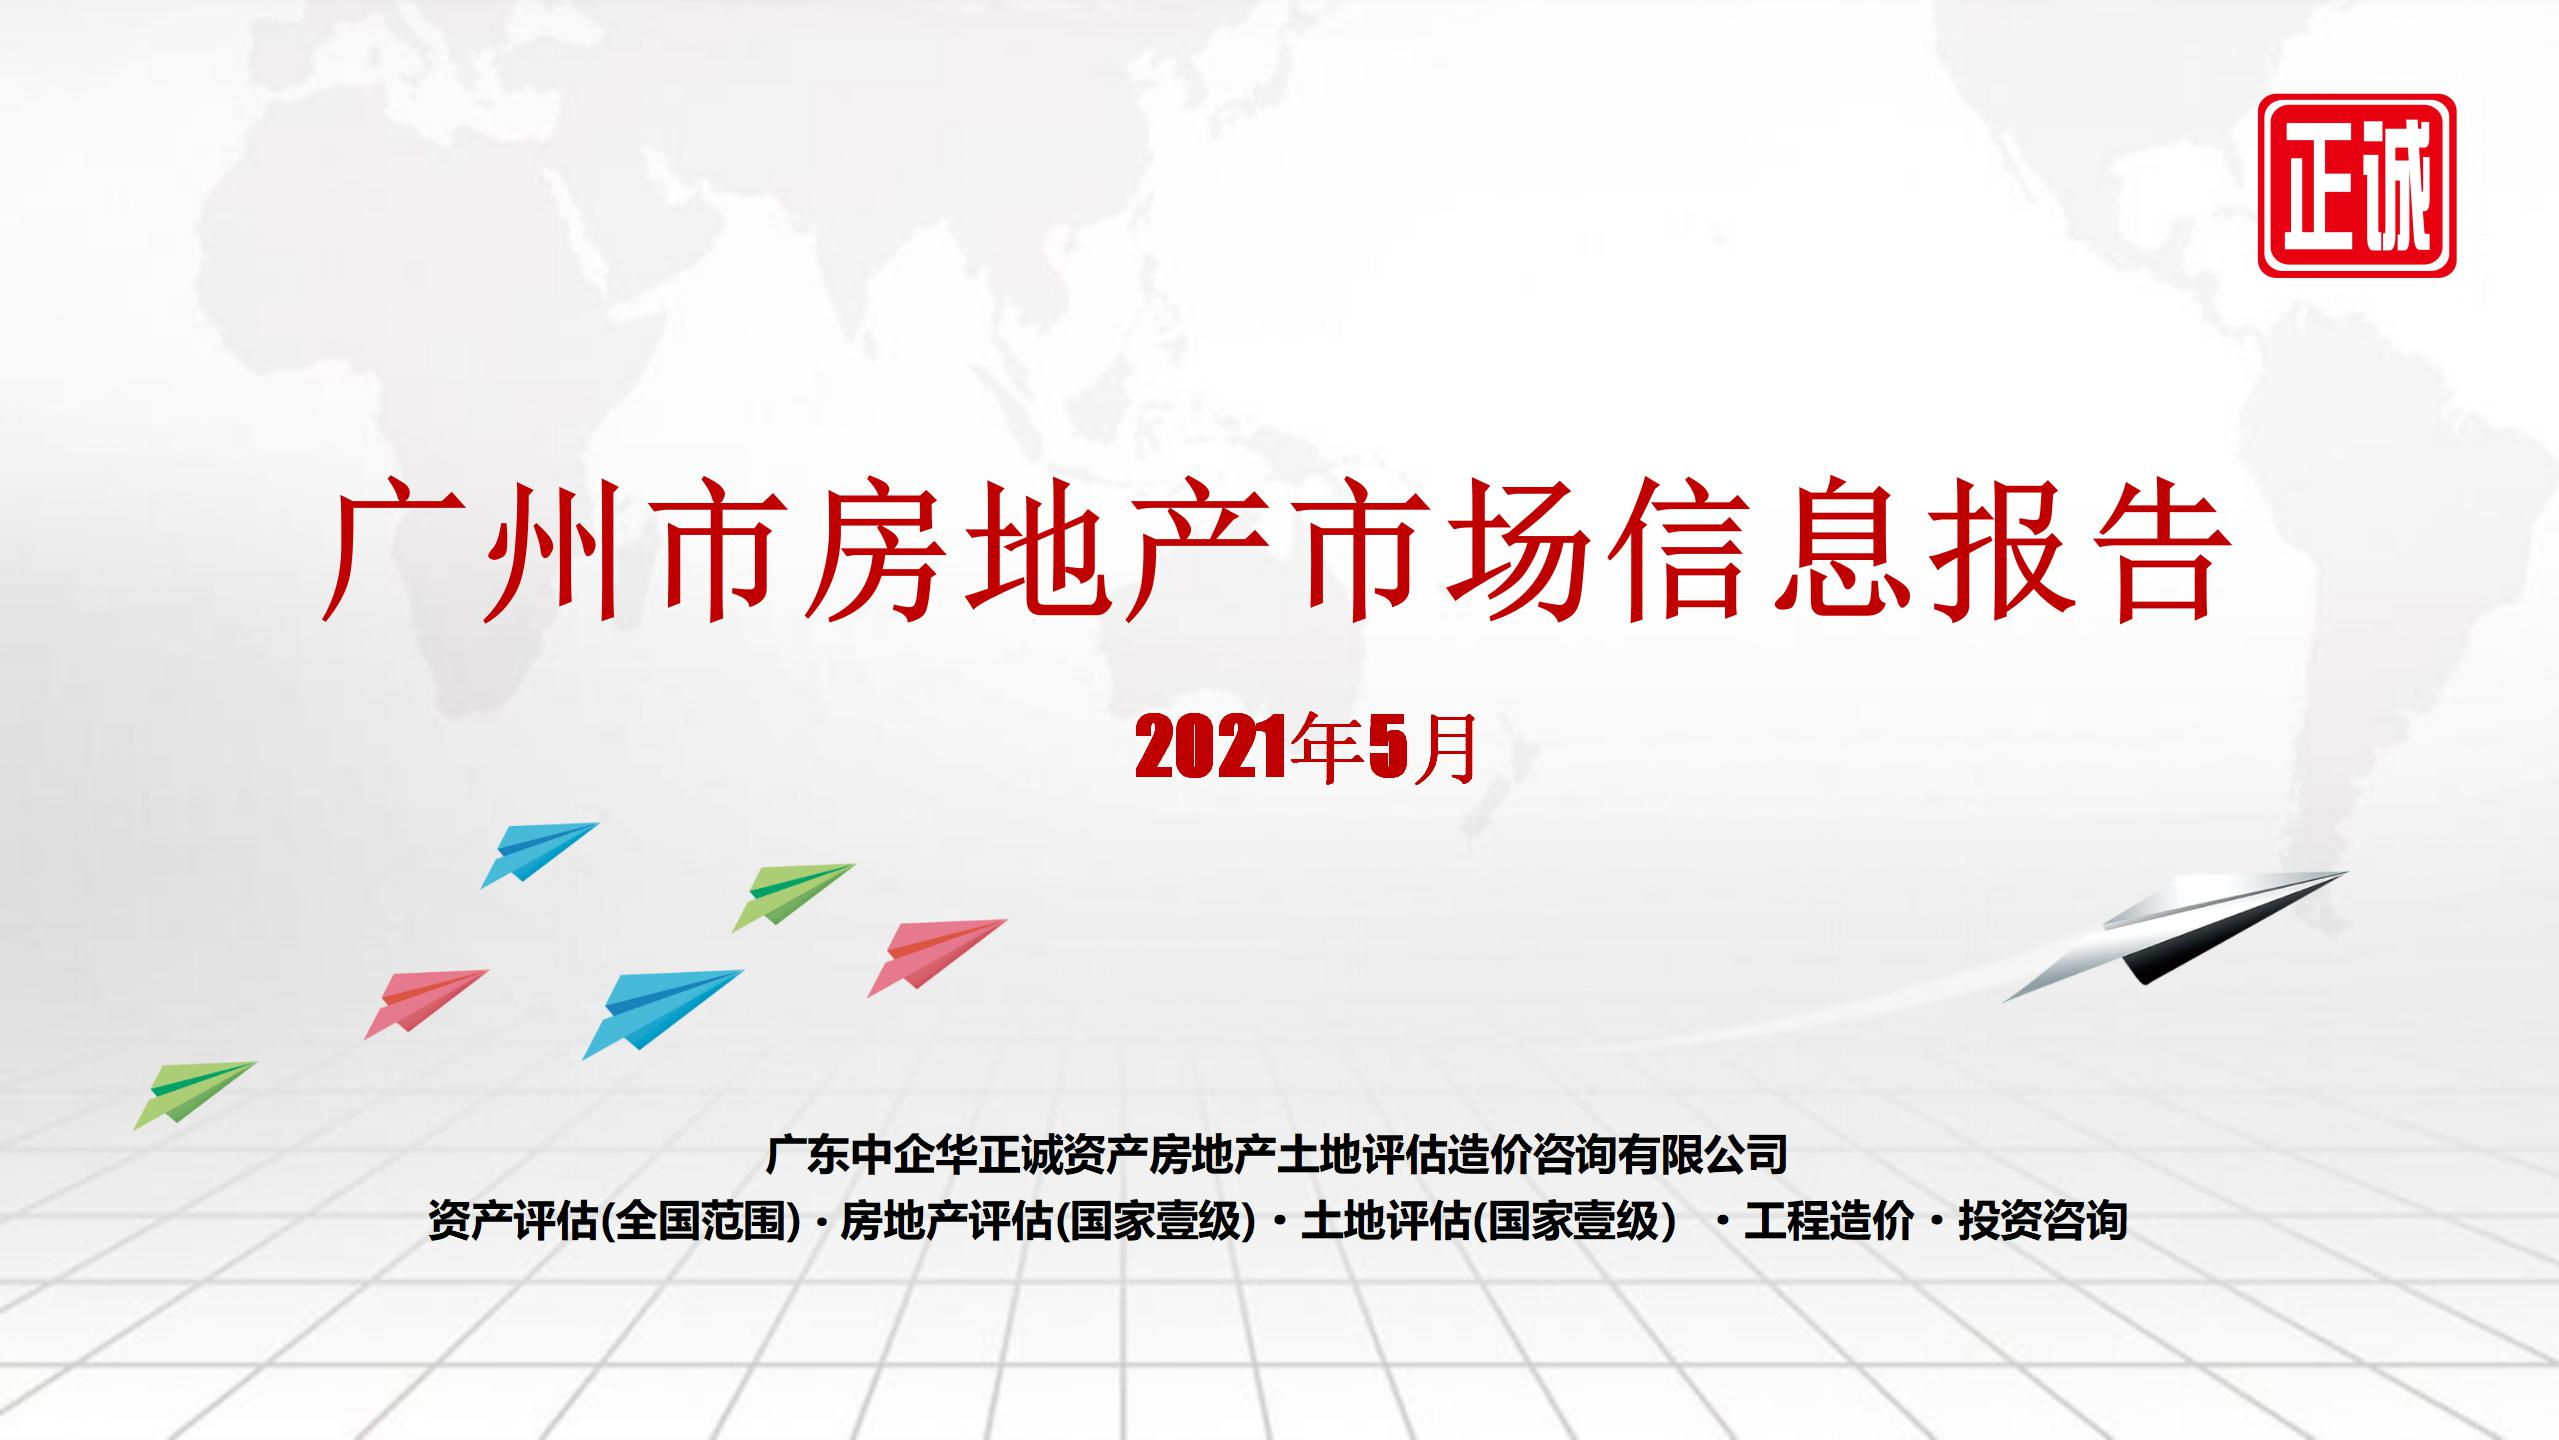 2021年5月廣州市房地產市場信息報告